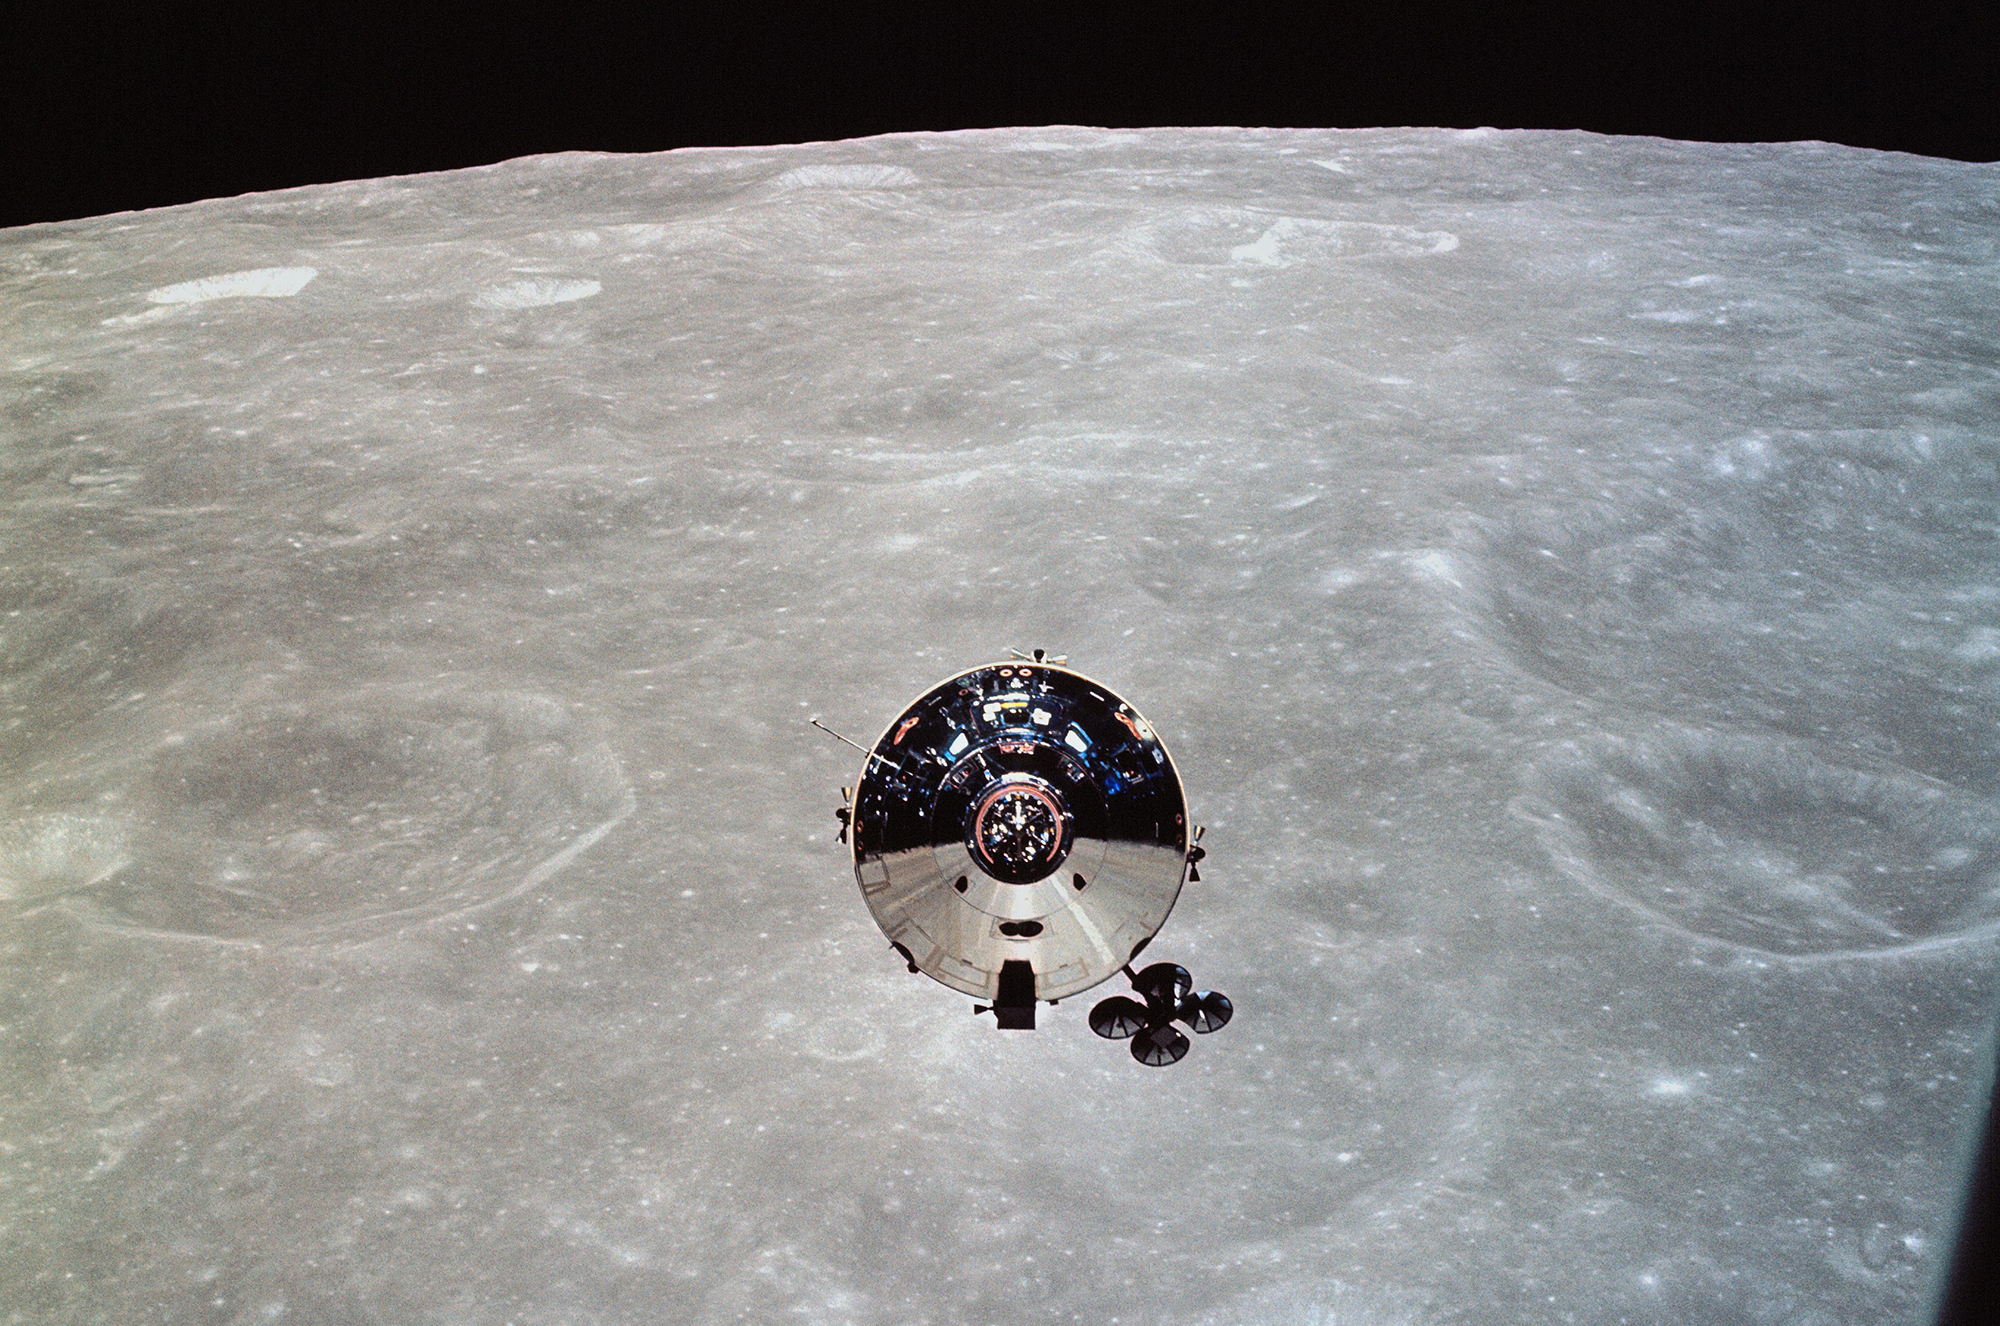 Módulo lunar perdido pela NASA é encontrado por astrônomos 50 anos depois